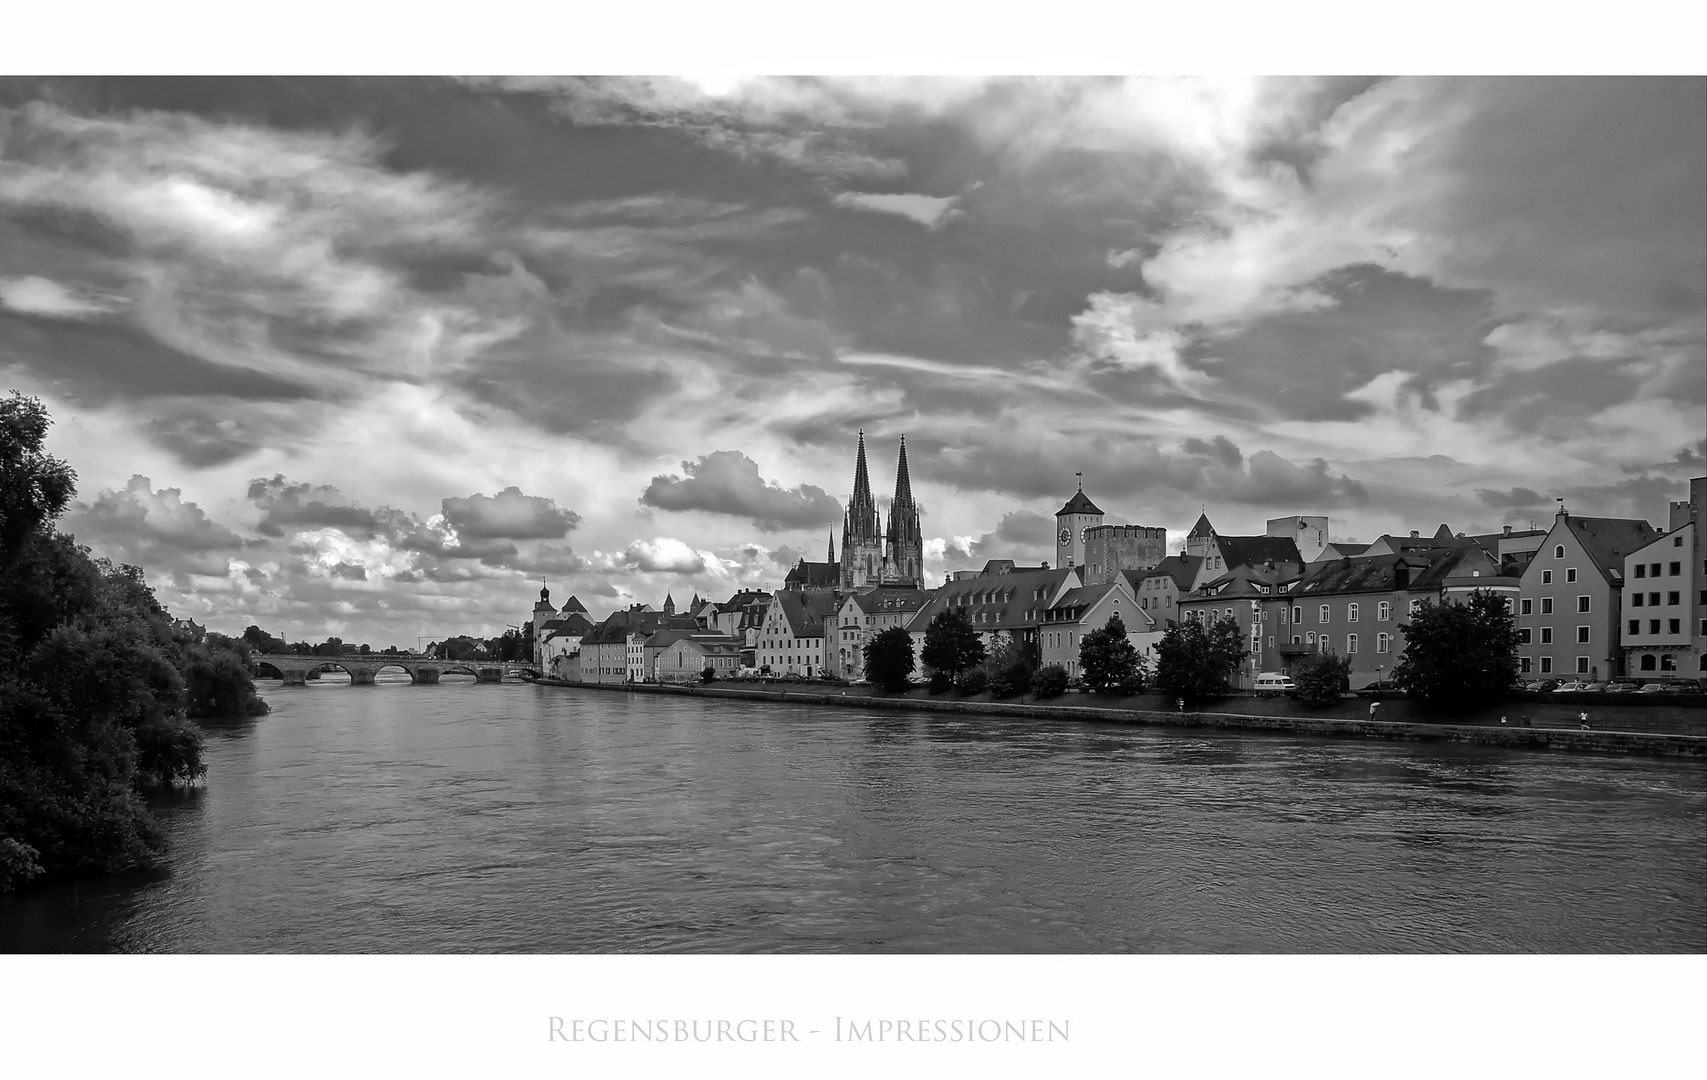 Bayrische Impressionen " Regensburg "